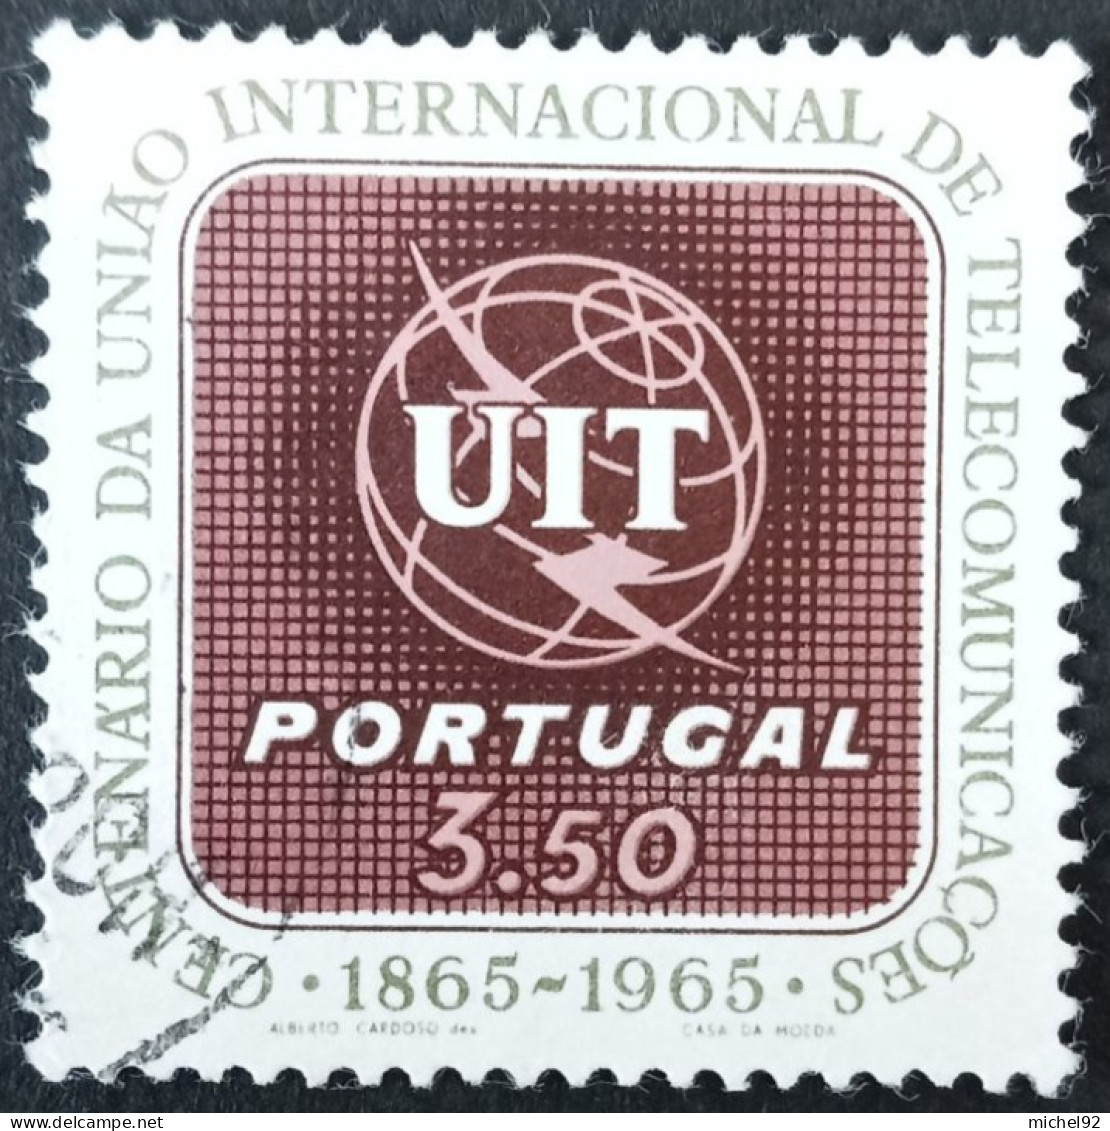 Portugal 1965 - YT N°964 - Oblitéré - Used Stamps